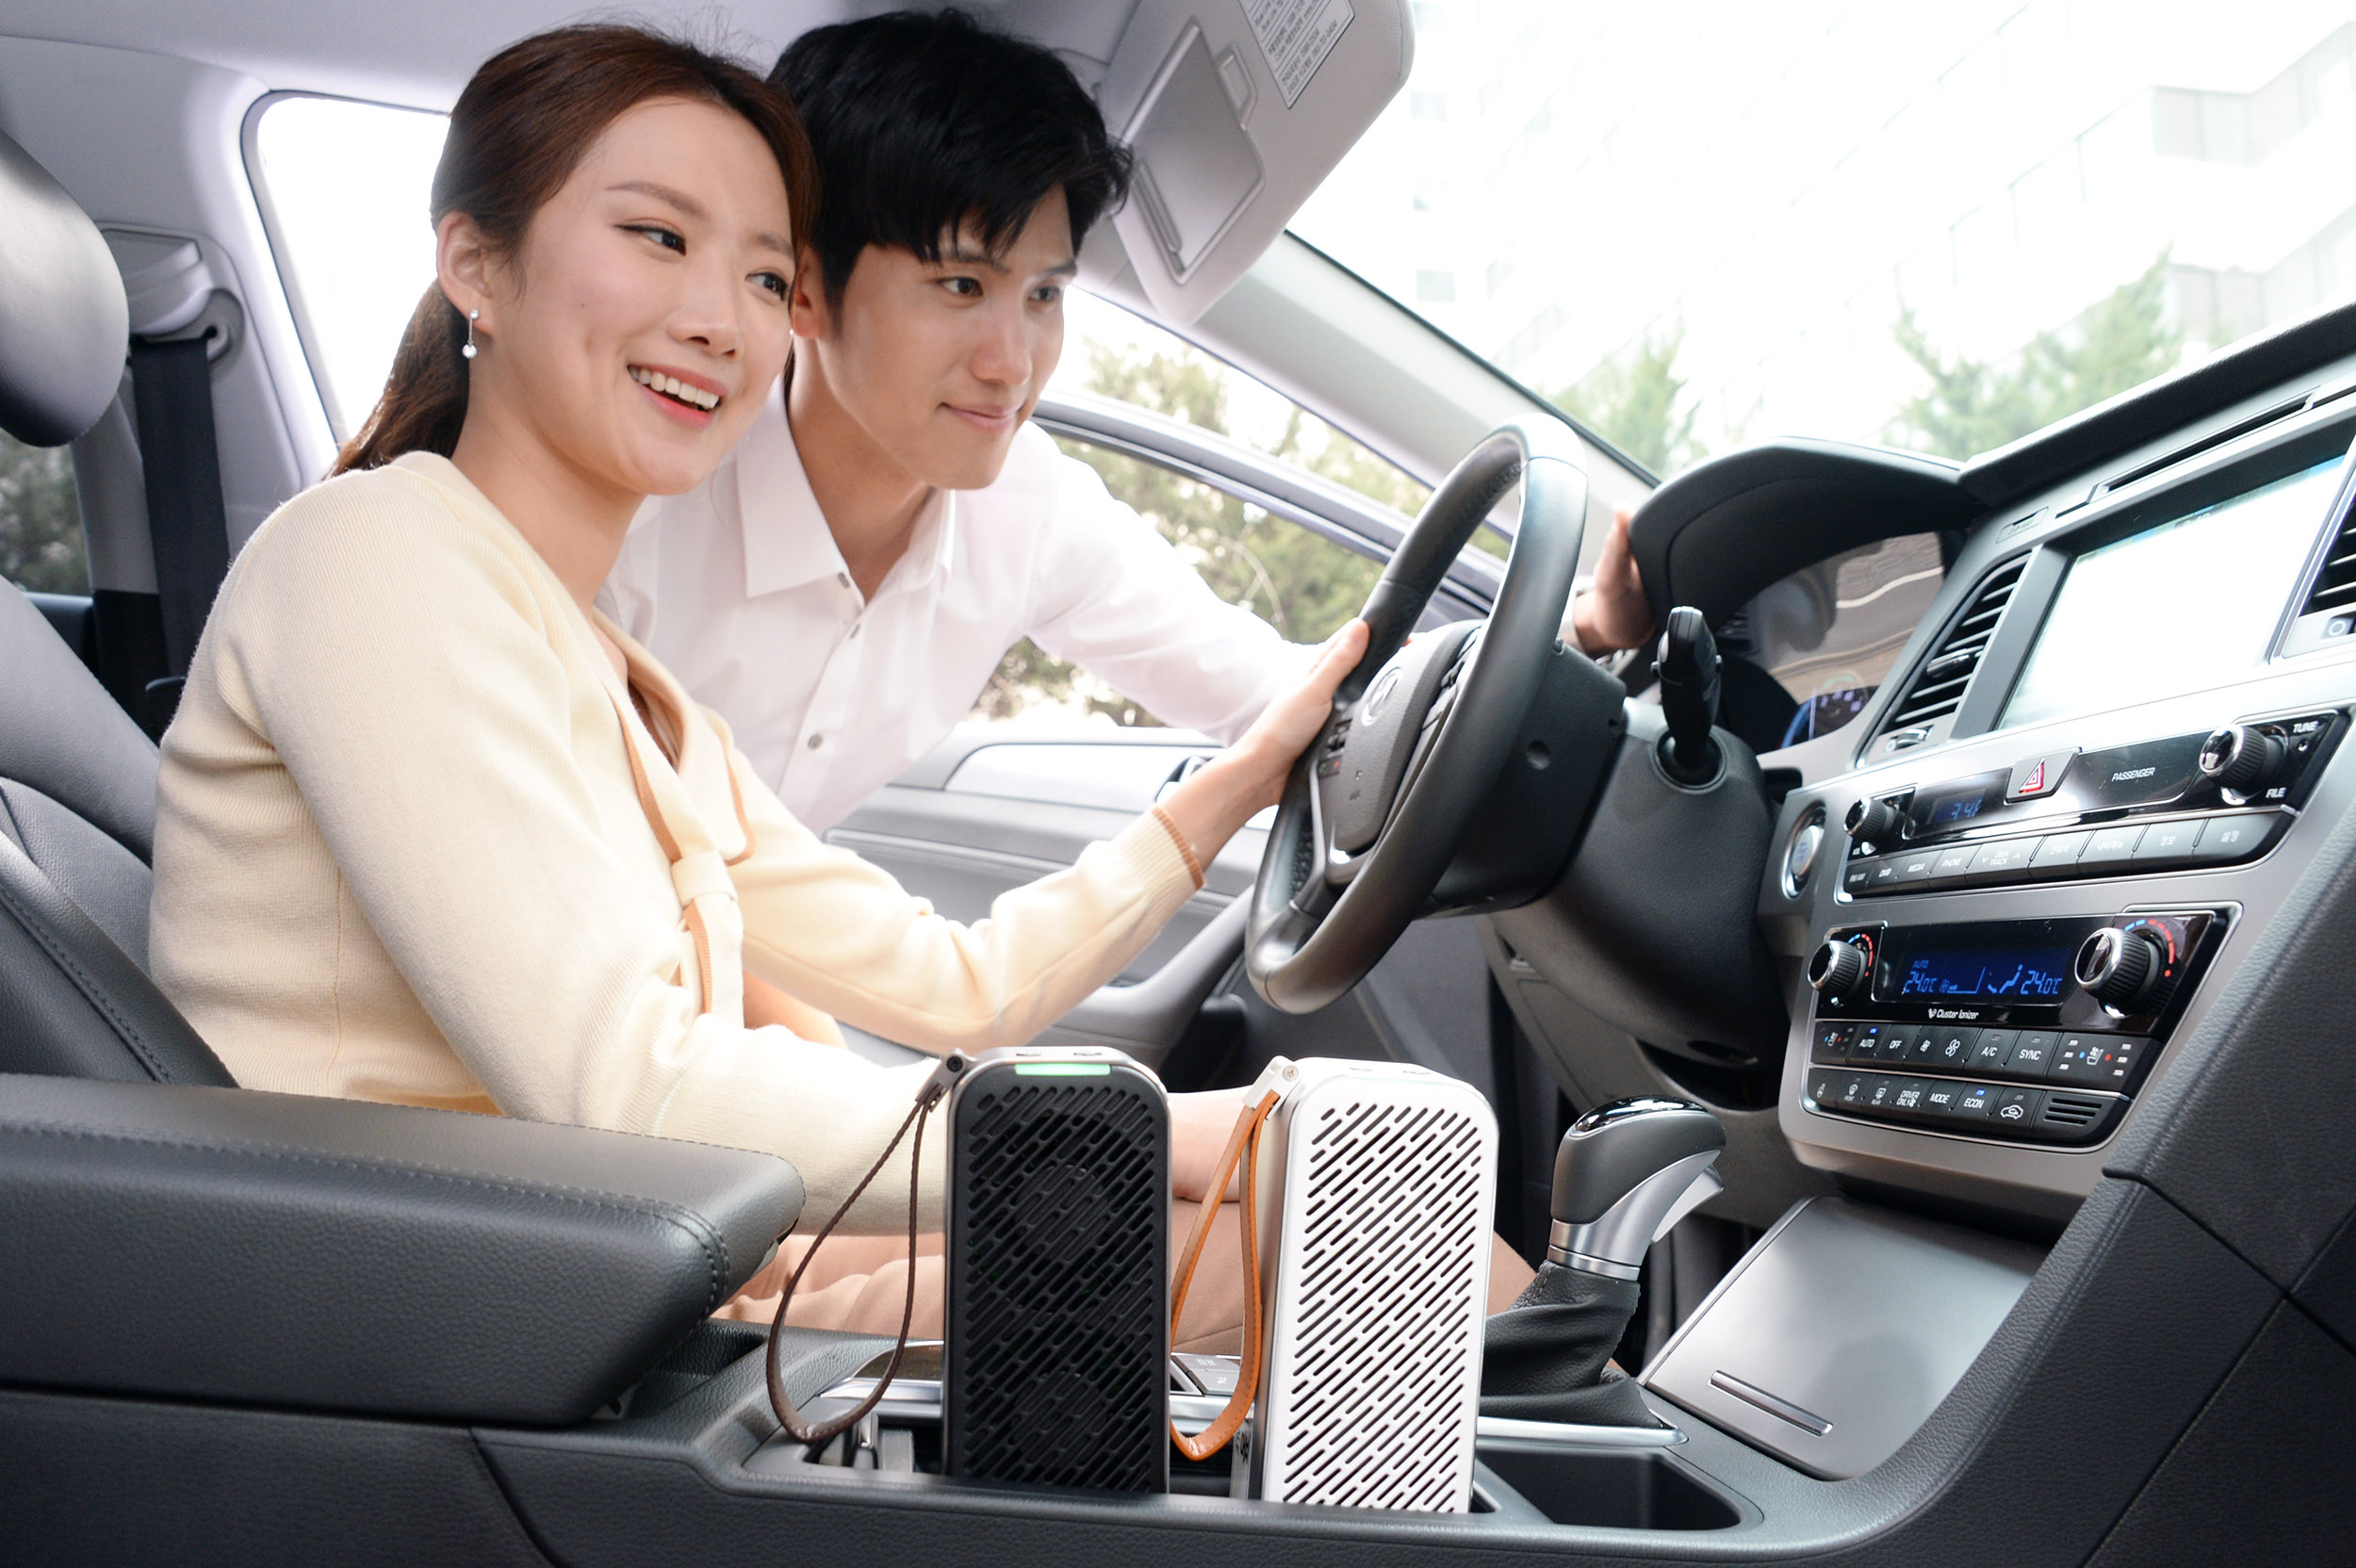 LG전자가 22일 휴대용 공기청정기 ‘LG 퓨리케어 미니 공기청정기’를 출시한다. 사진은 모델이 자동차에서 LG 퓨리케어 미니 공기청정기를 사용하는 모습